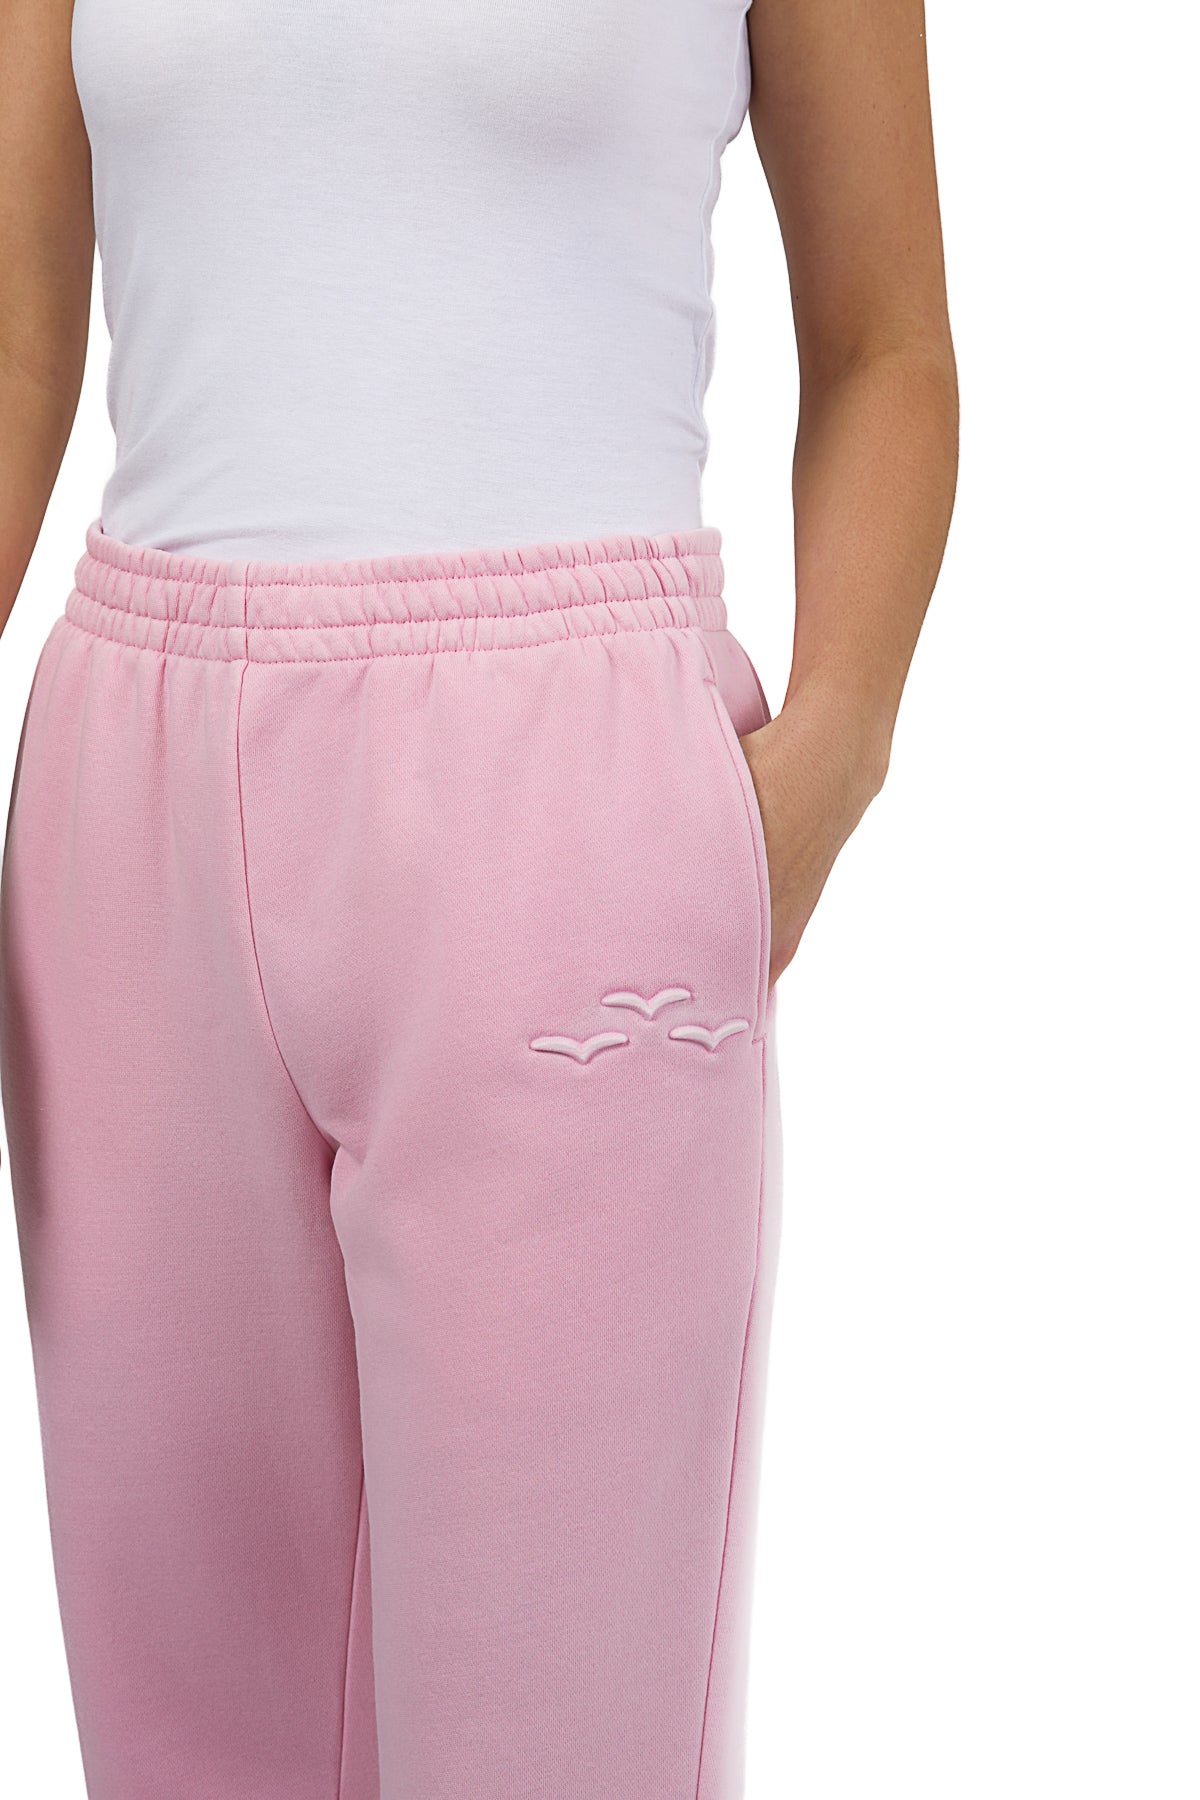 PP001 - Classic Fleece Pocket Sweatpants - Pink